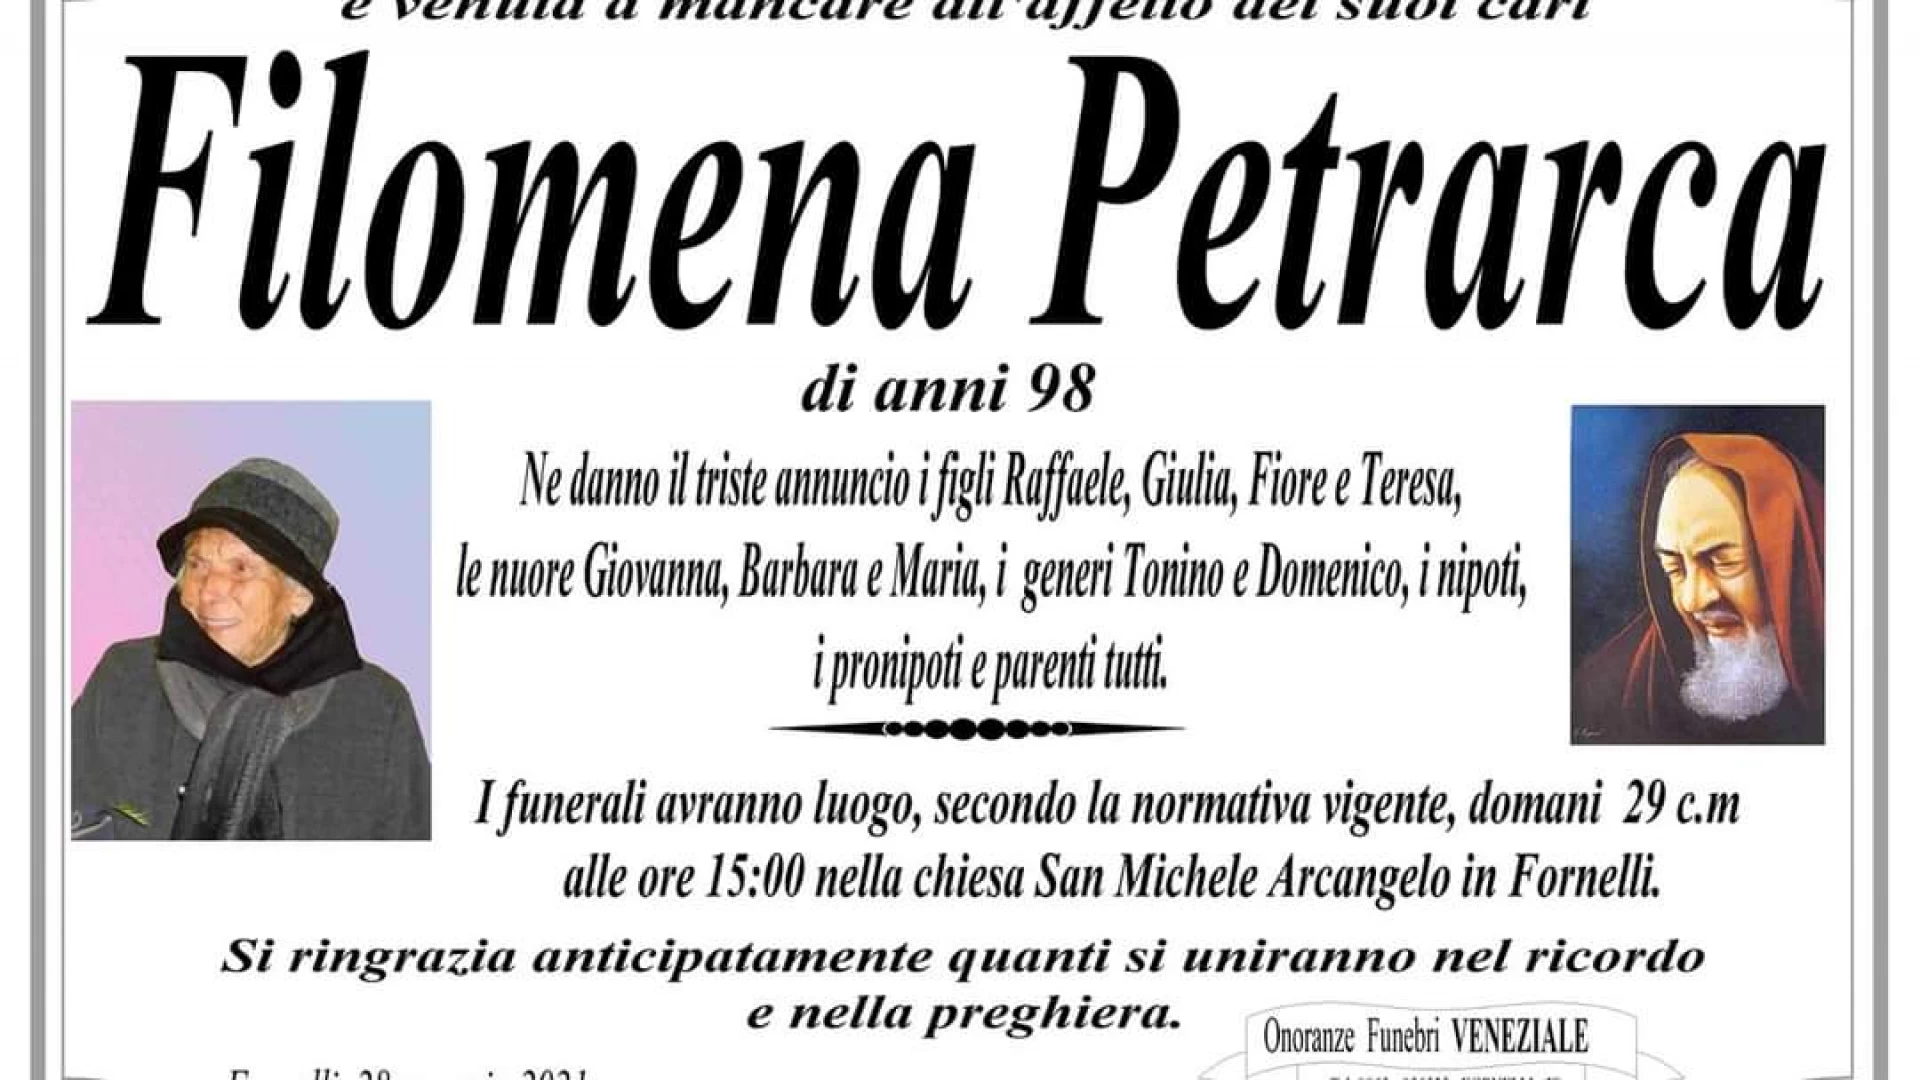 Fornelli: lutto in paese. E’ scomparsa la signora Filomena Petrarca, l’ultima dei figli del Martire Michele Petrarca.